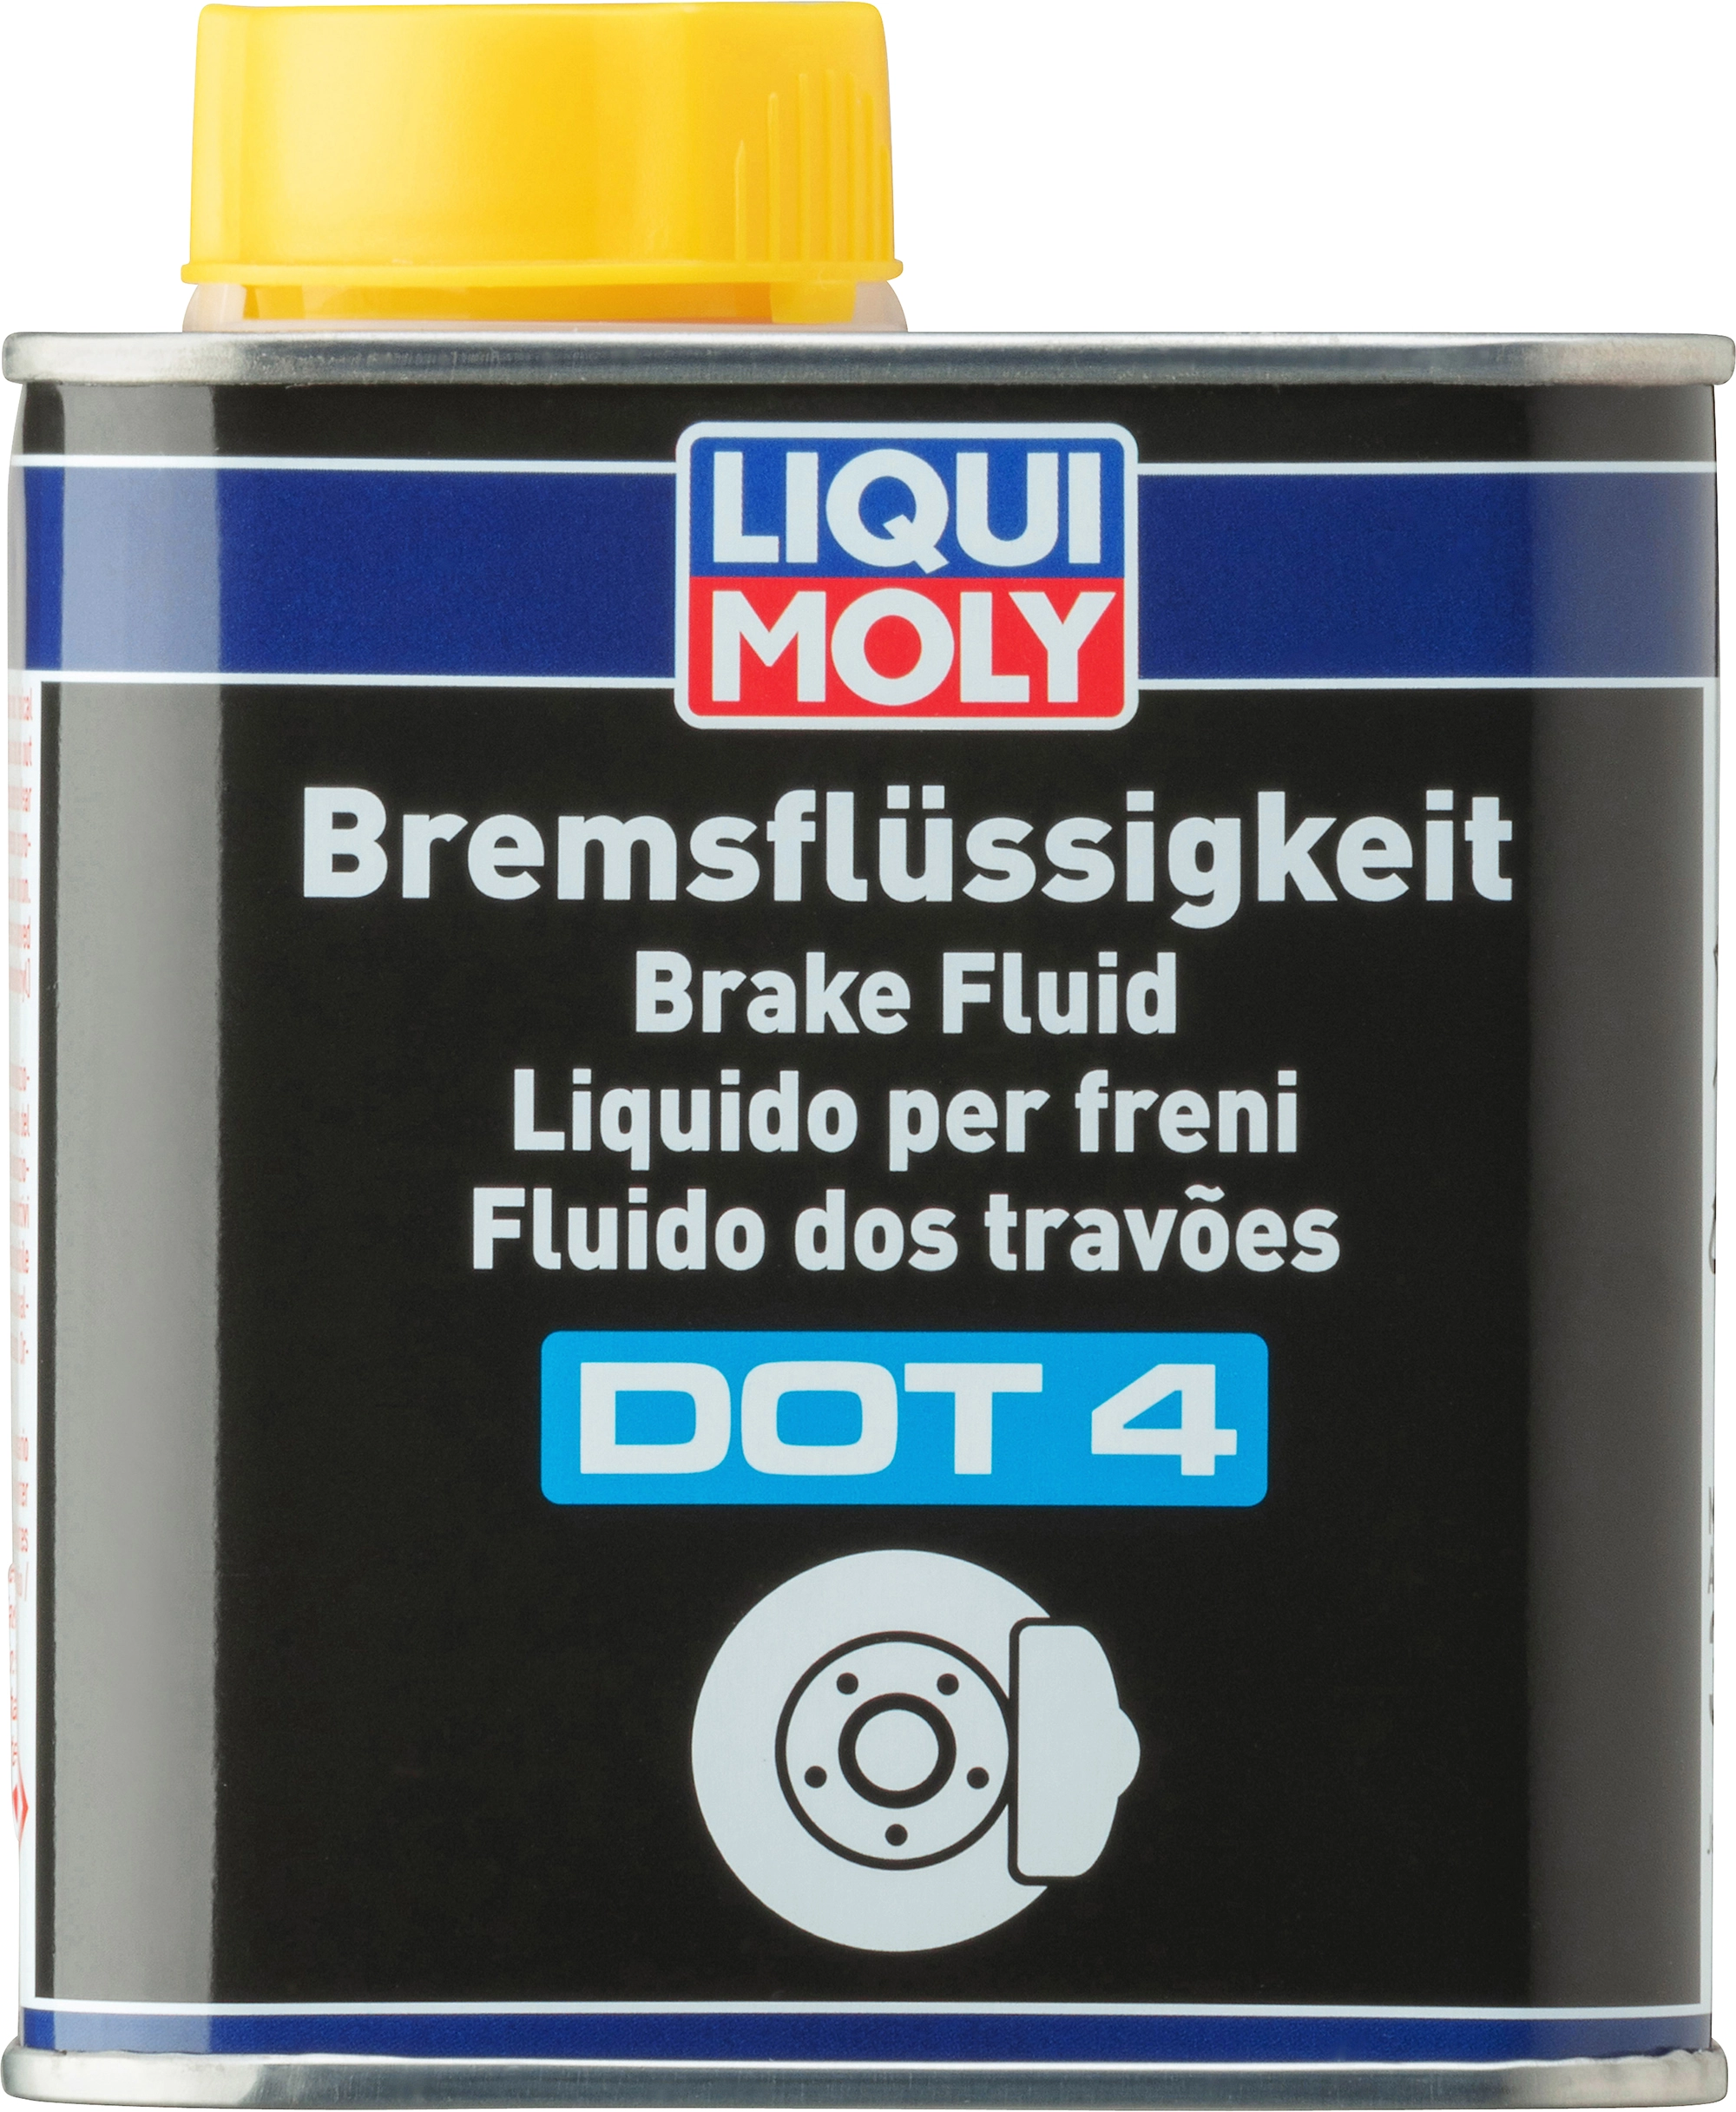 LIQUI MOLY Bremsflüssigkeit DOT 4, 5 L, Bremsflüssigkeit